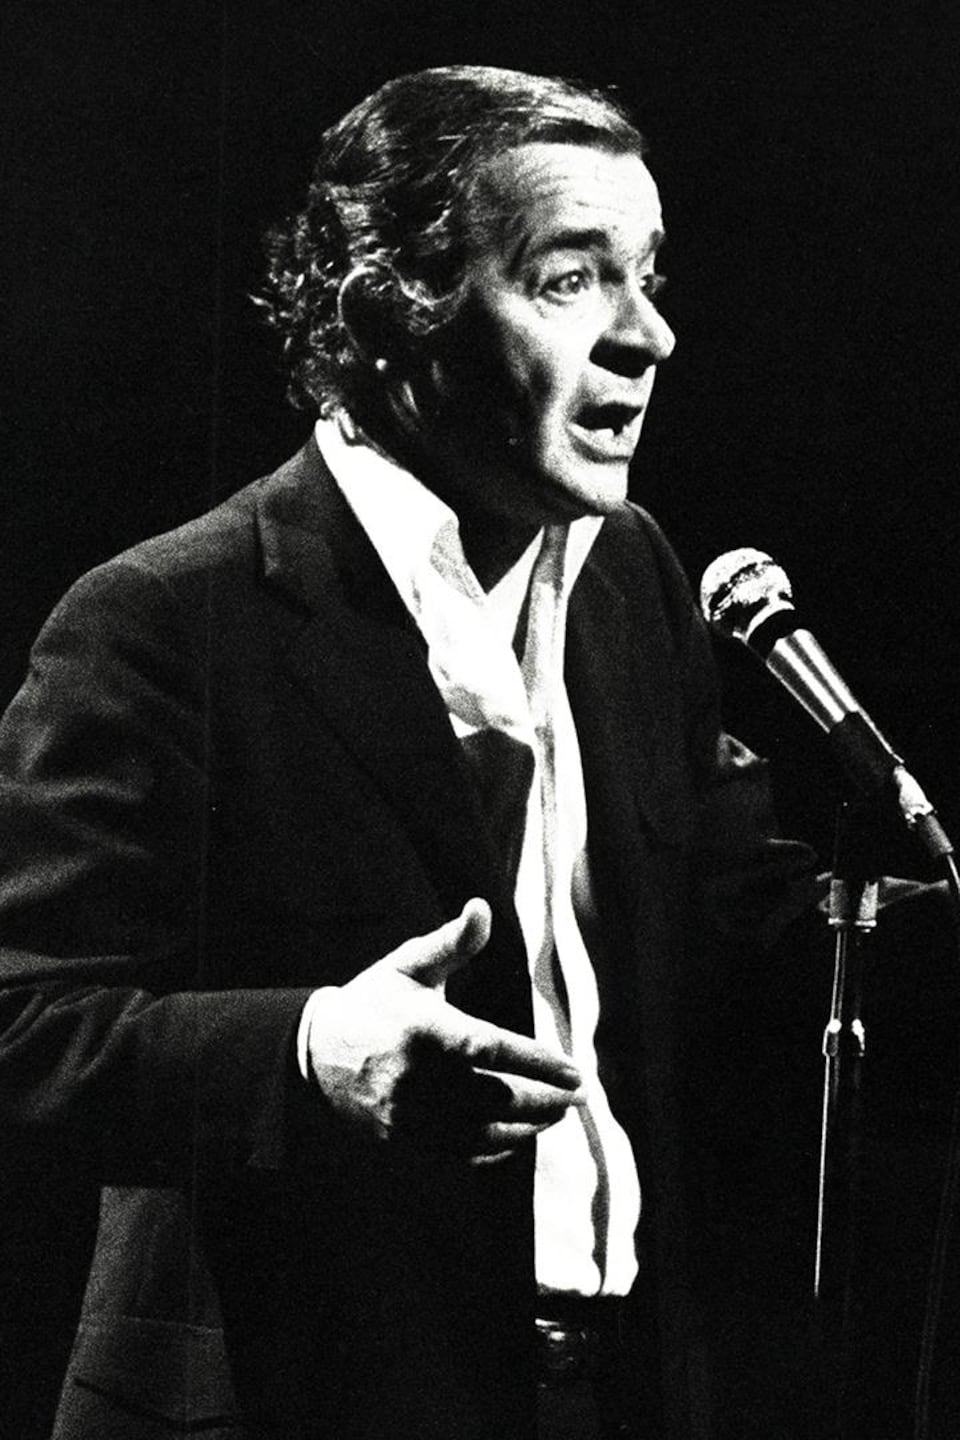 Serge Reggiani qui chante debout sur scène derrière un micro sur pied.